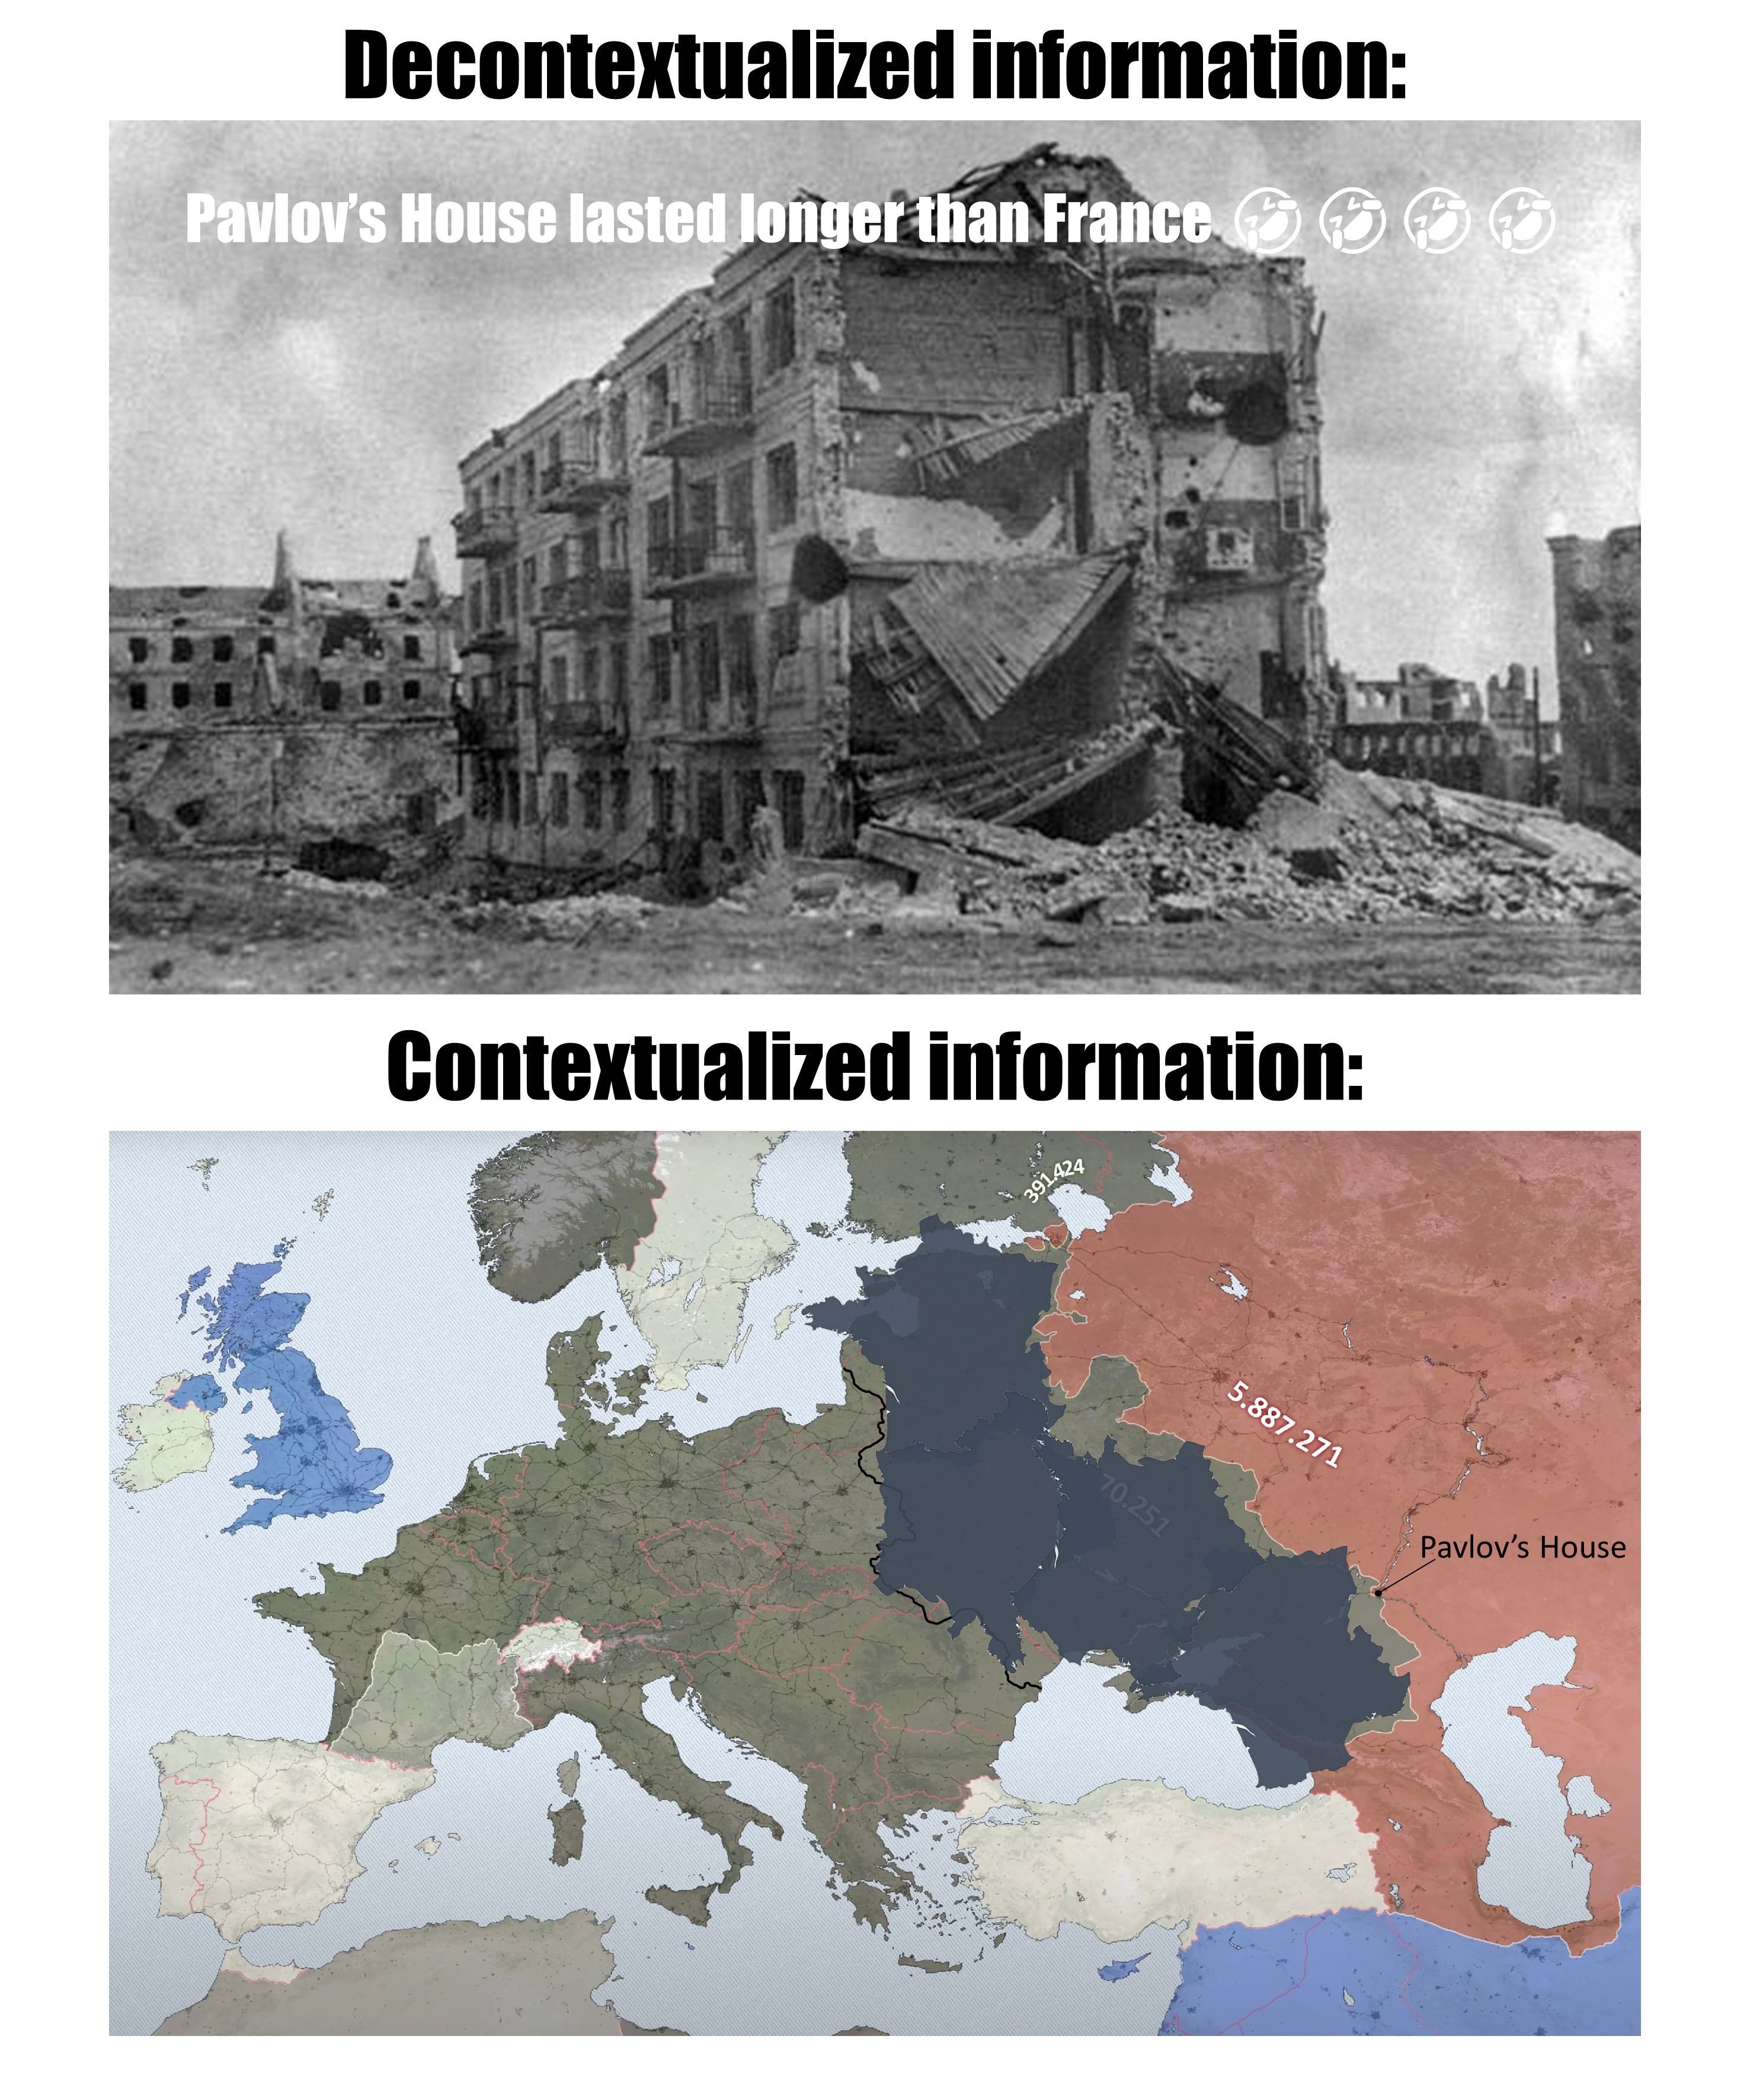 "Pavlov's House lasted longer than France lol"